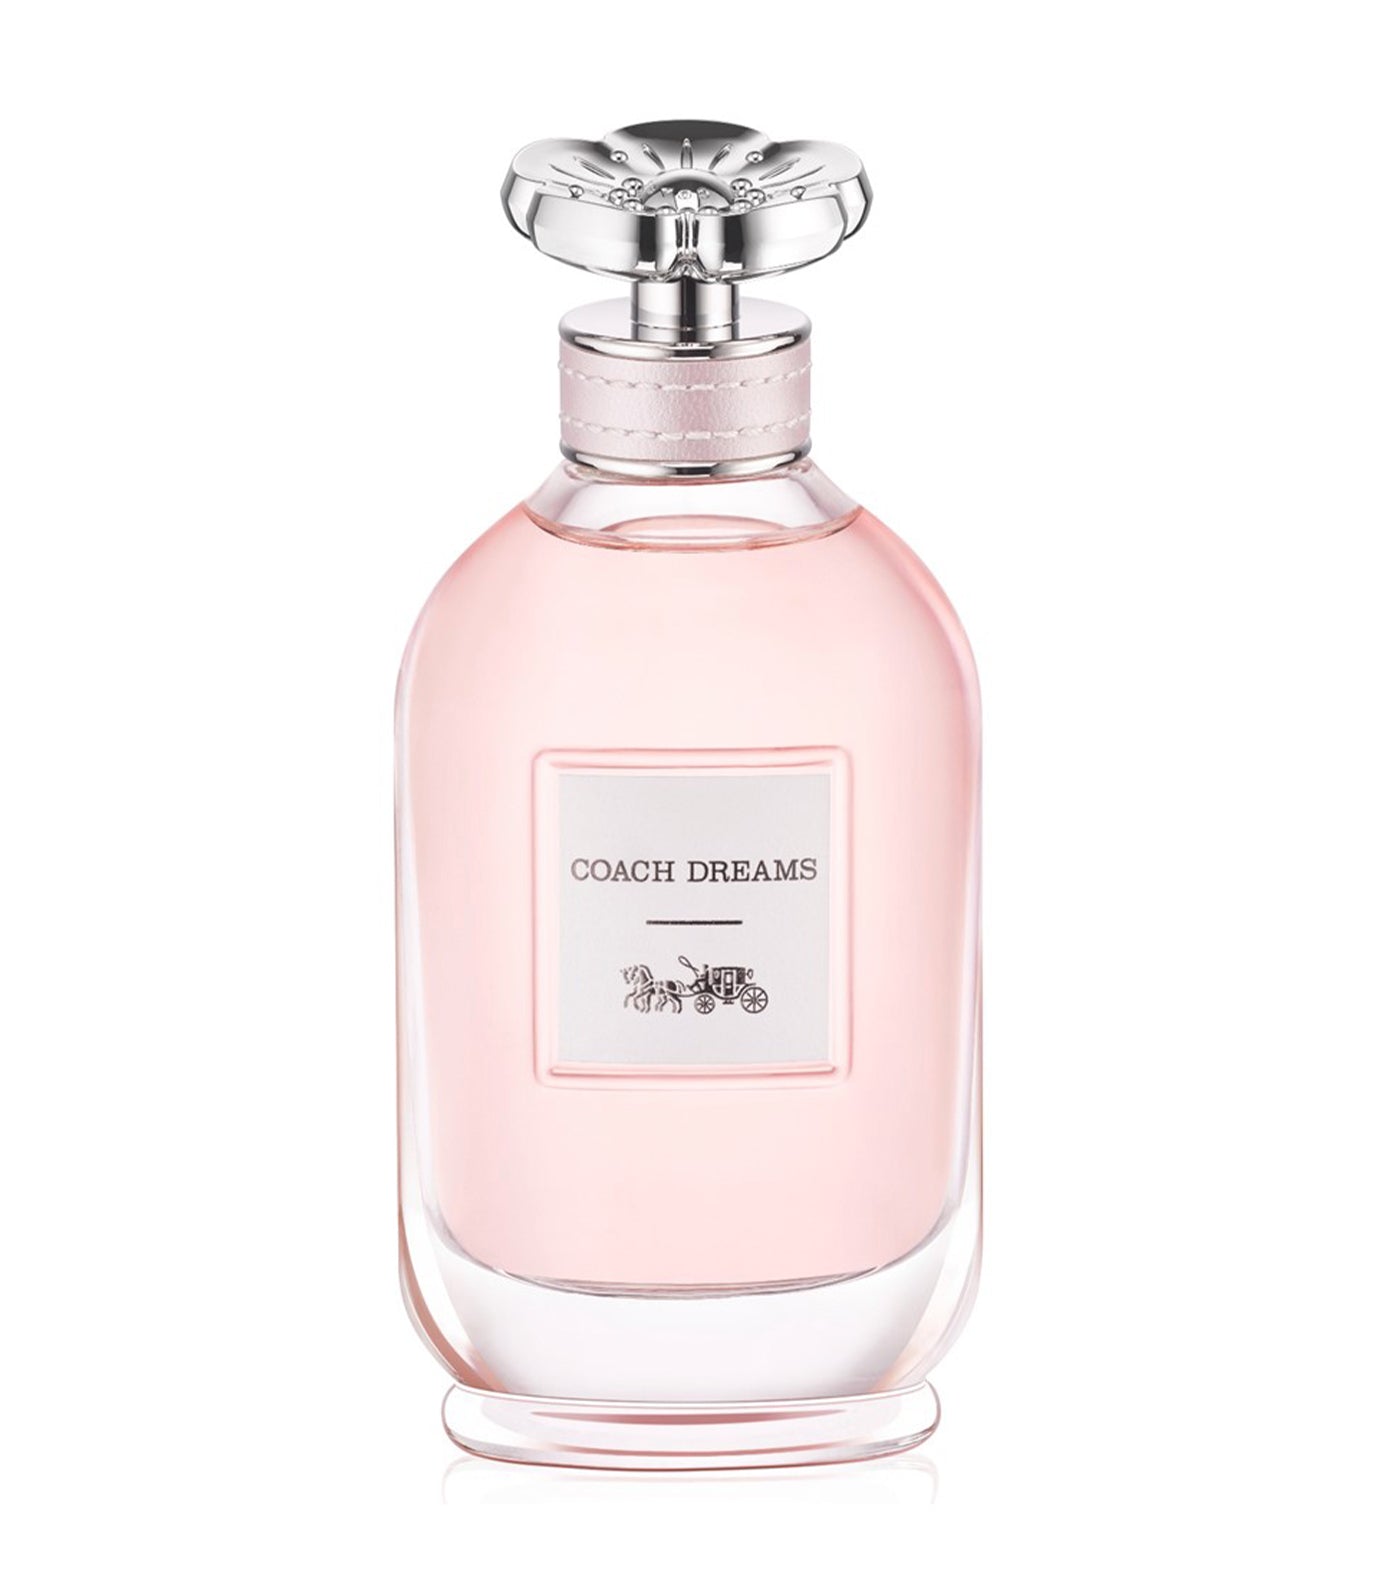 Dreams Eau de Parfum by Coach Fragrances 90ml